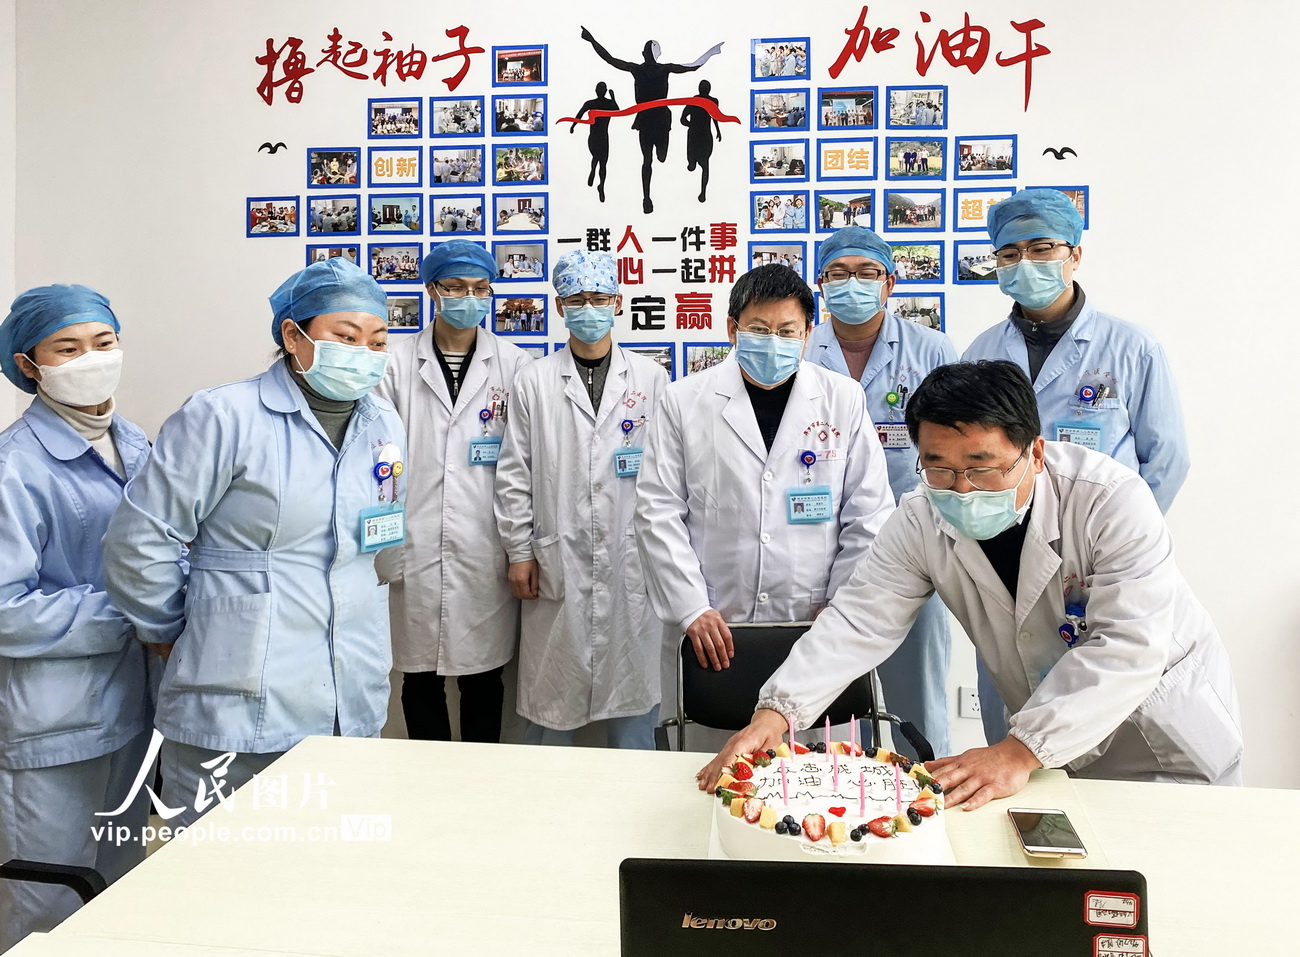 2月10日，在江西省萍乡市第二人民医院重症医学科培训室内，重症医学科的医务人员正通过视频为在一线隔离病区的医生刘亚卿送上生日祝福。